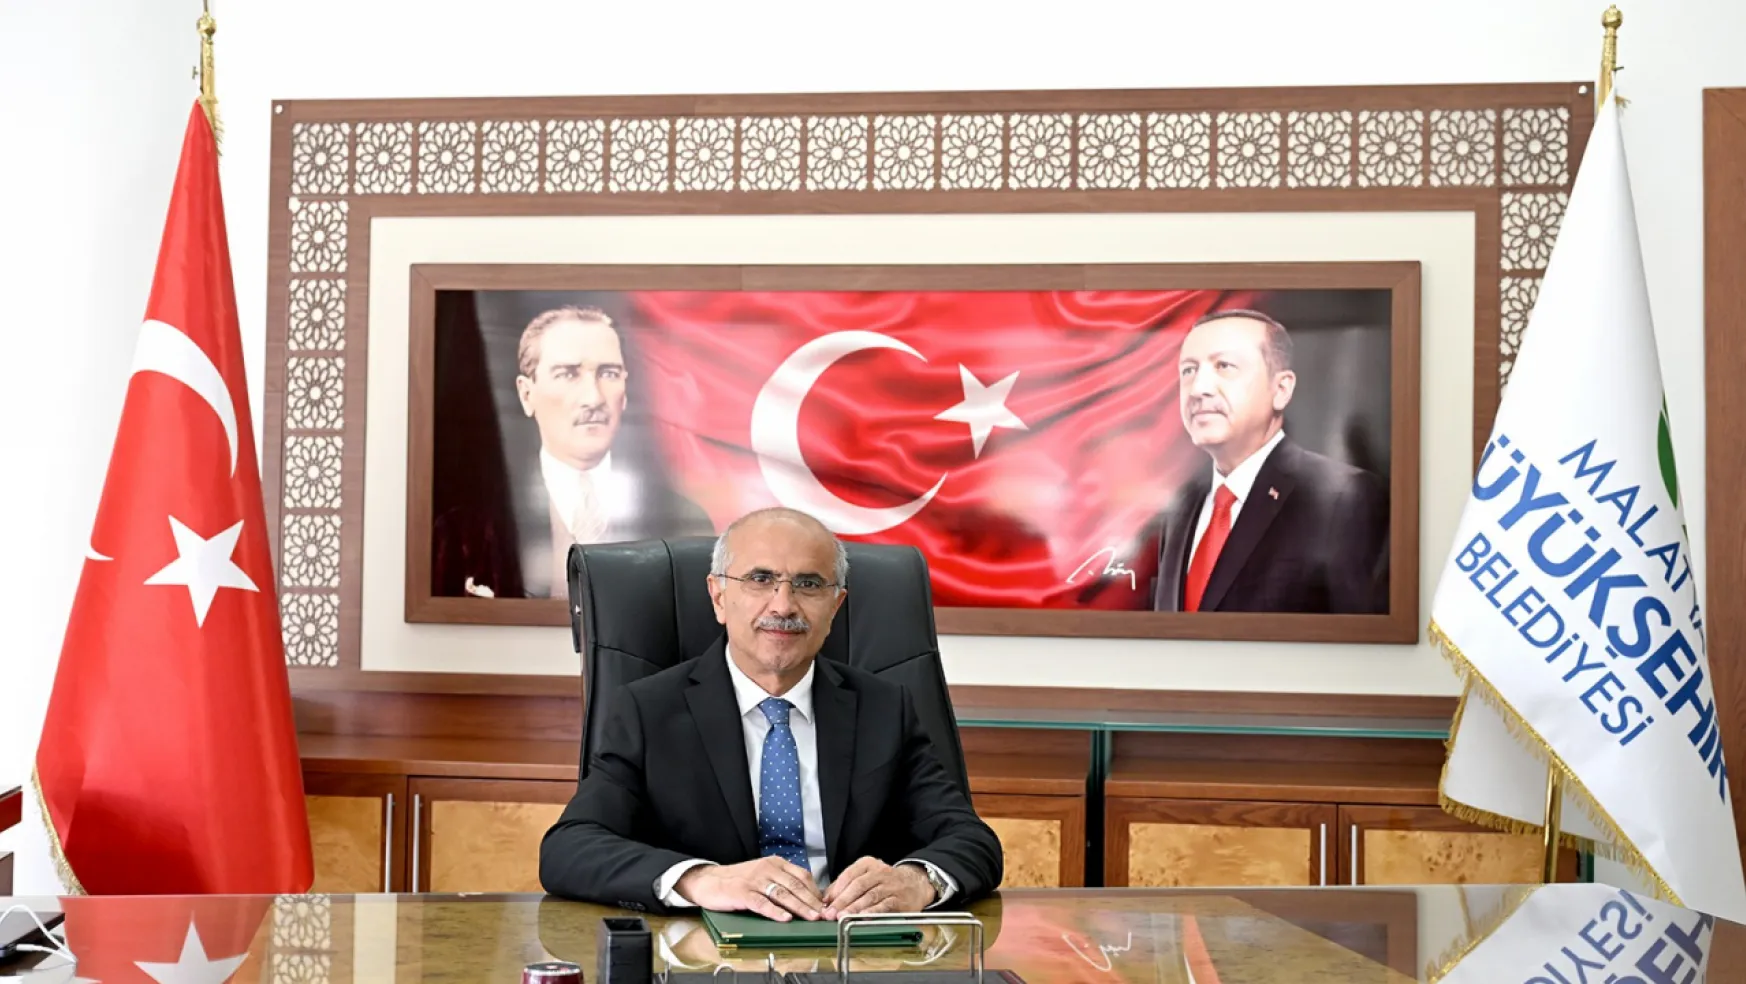 Başkan Er, Özal ve Hamit Fendoğlu'nun ölüm yıldönümünde bir mesaj yayınladı